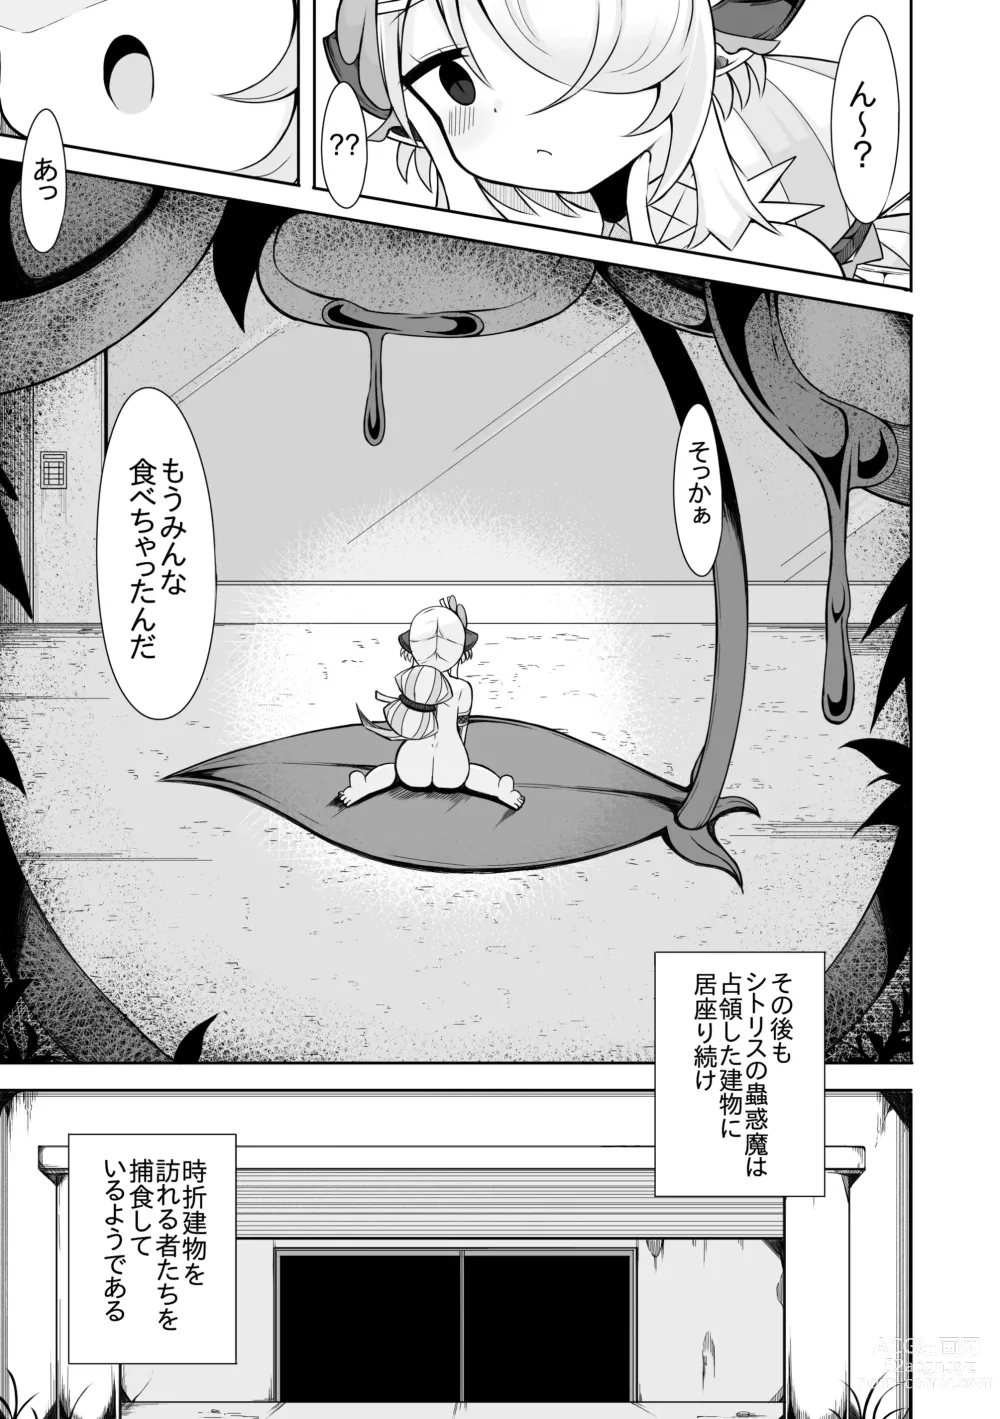 Page 19 of doujinshi Shitorisu no Kowakuma no Manga Futatsume